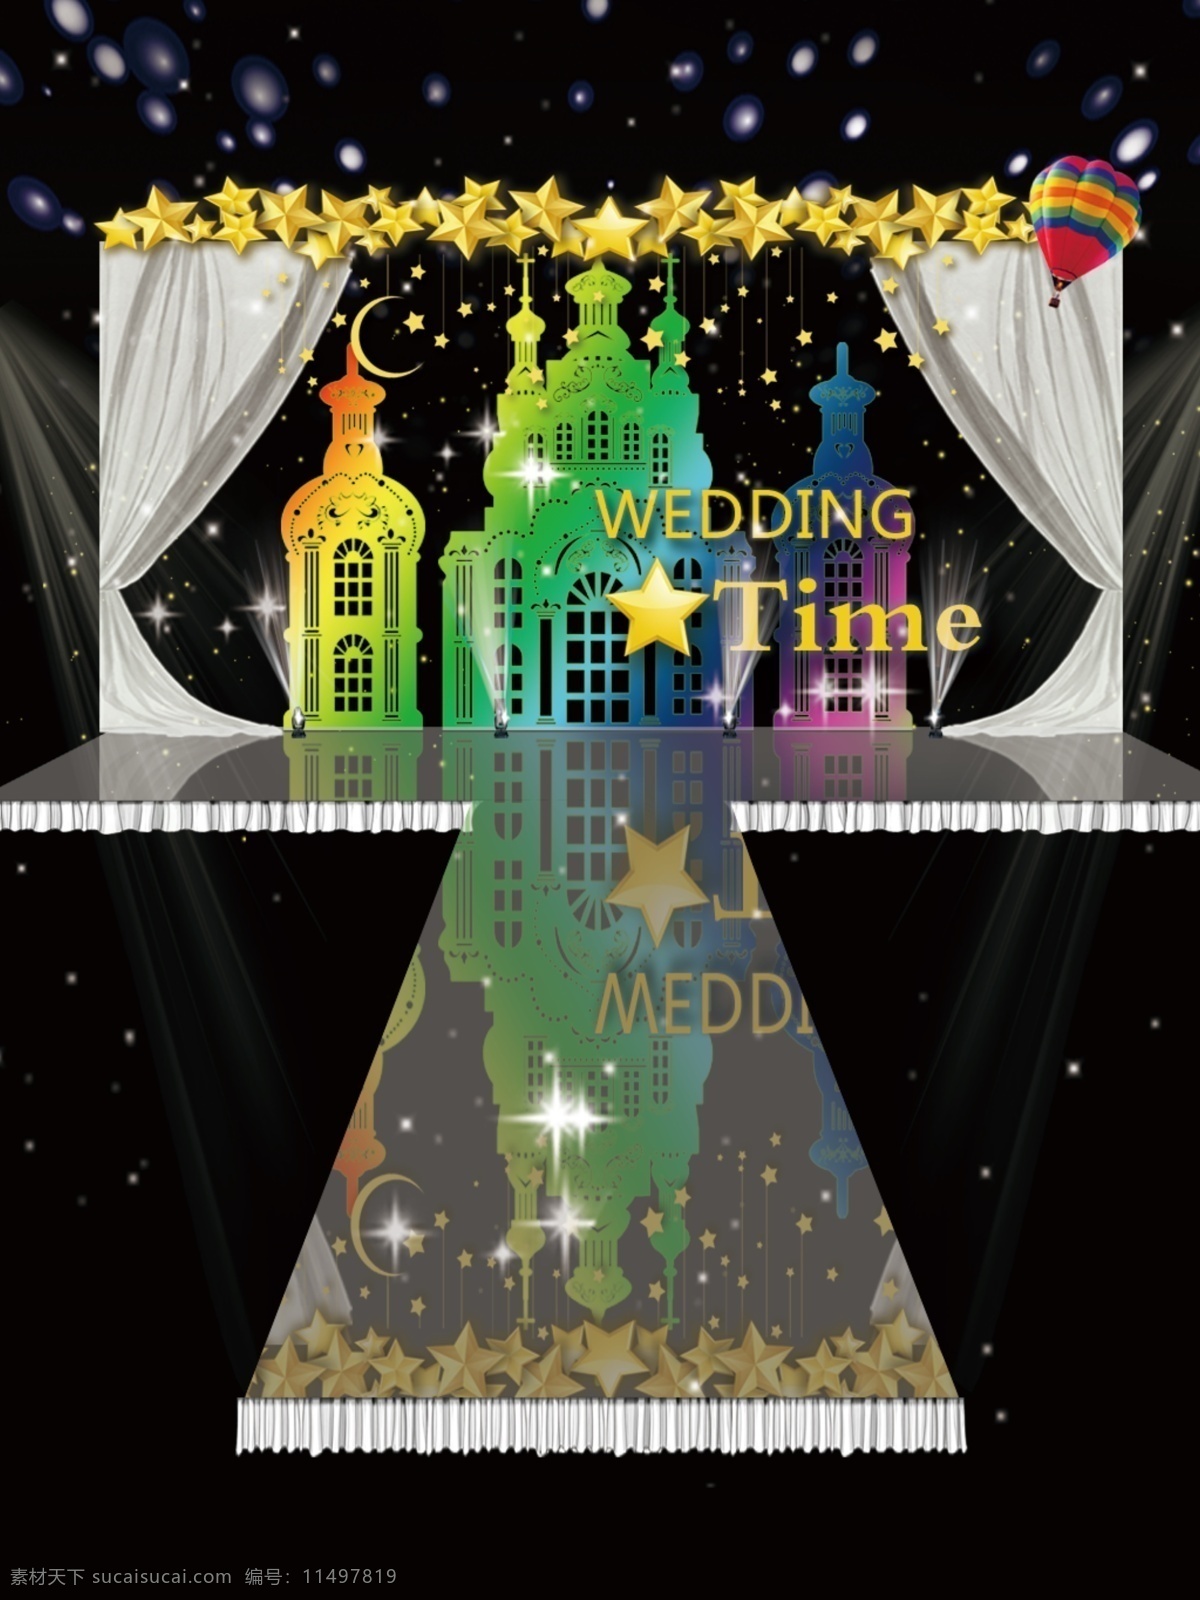 彩色 城堡 婚礼 星星 装饰 效果图 婚礼背景 婚礼效果图 婚庆 舞台